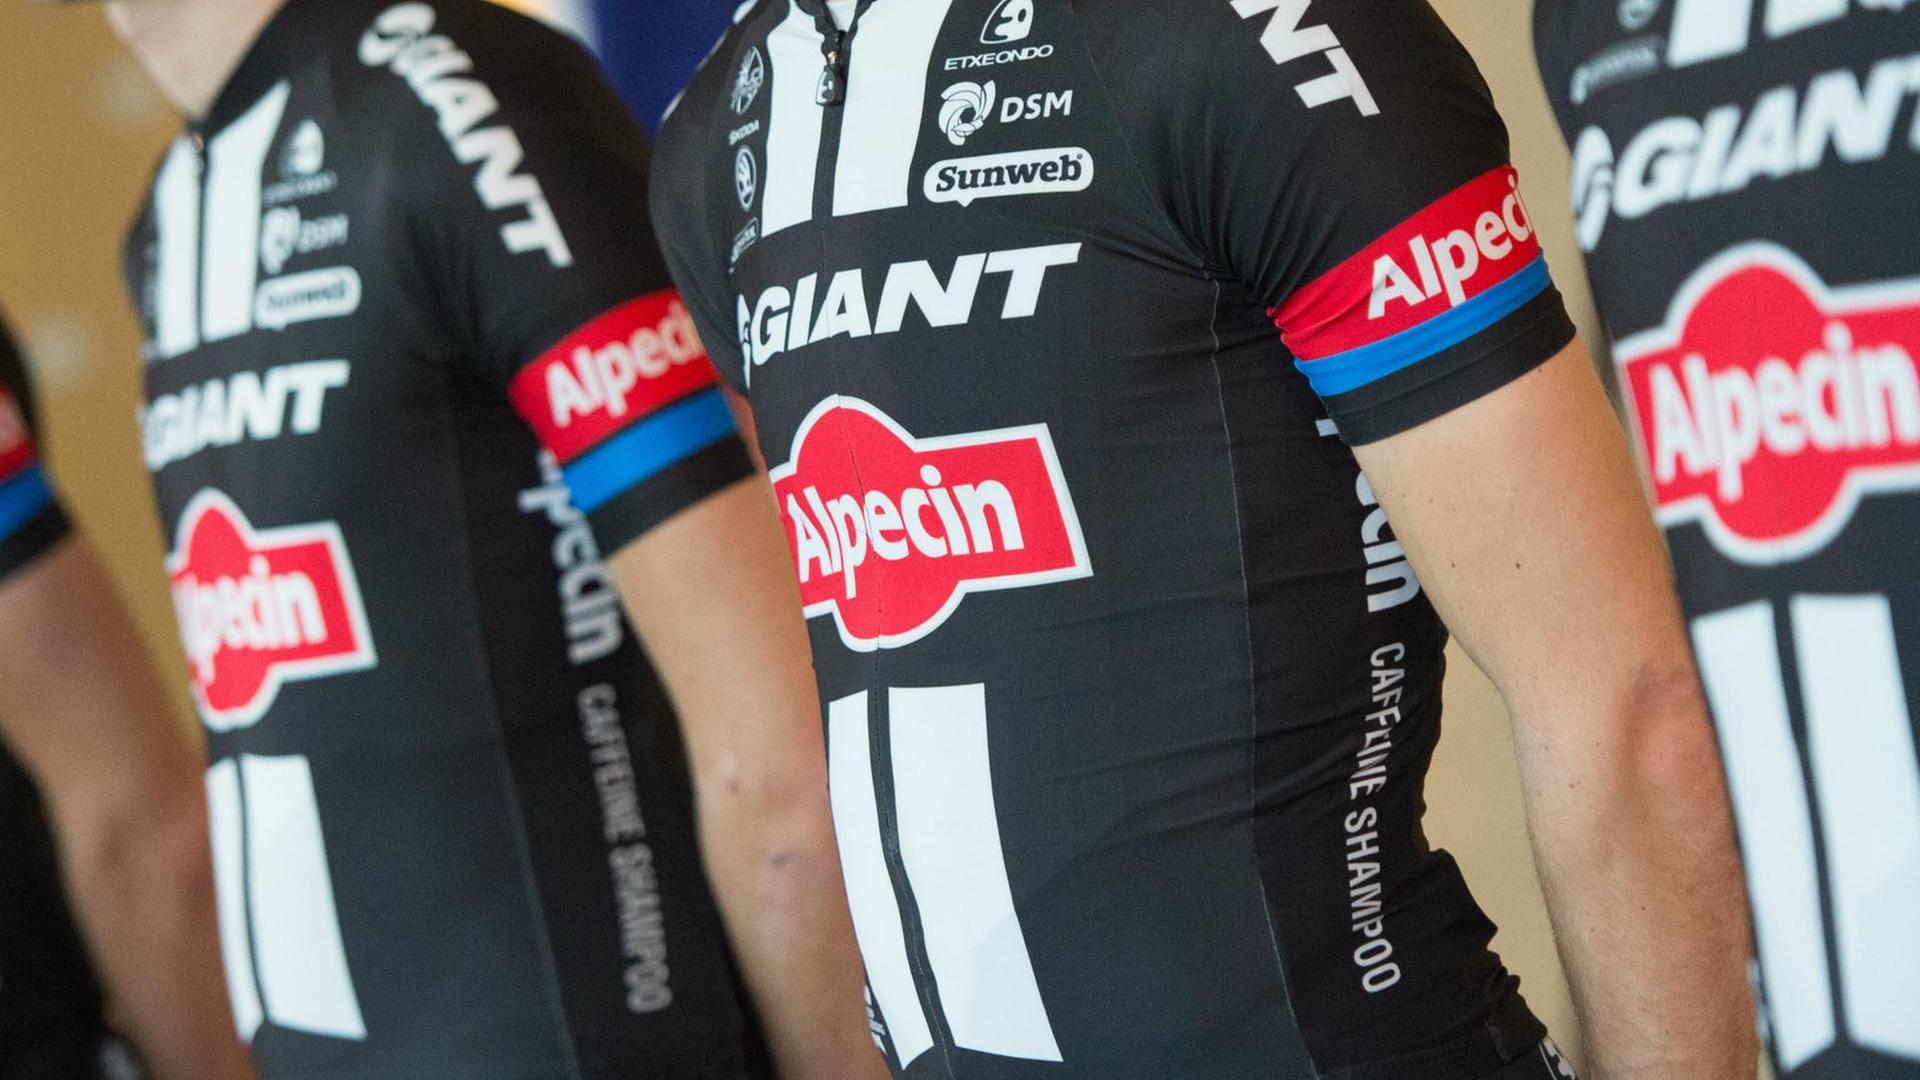 Mehrere Radsportler vom Team «Giant-Alpecin» stehen am 07.01.2015 in Berlin während der offiziellen Vorstellung des Radsport-Teams nebeneinander.